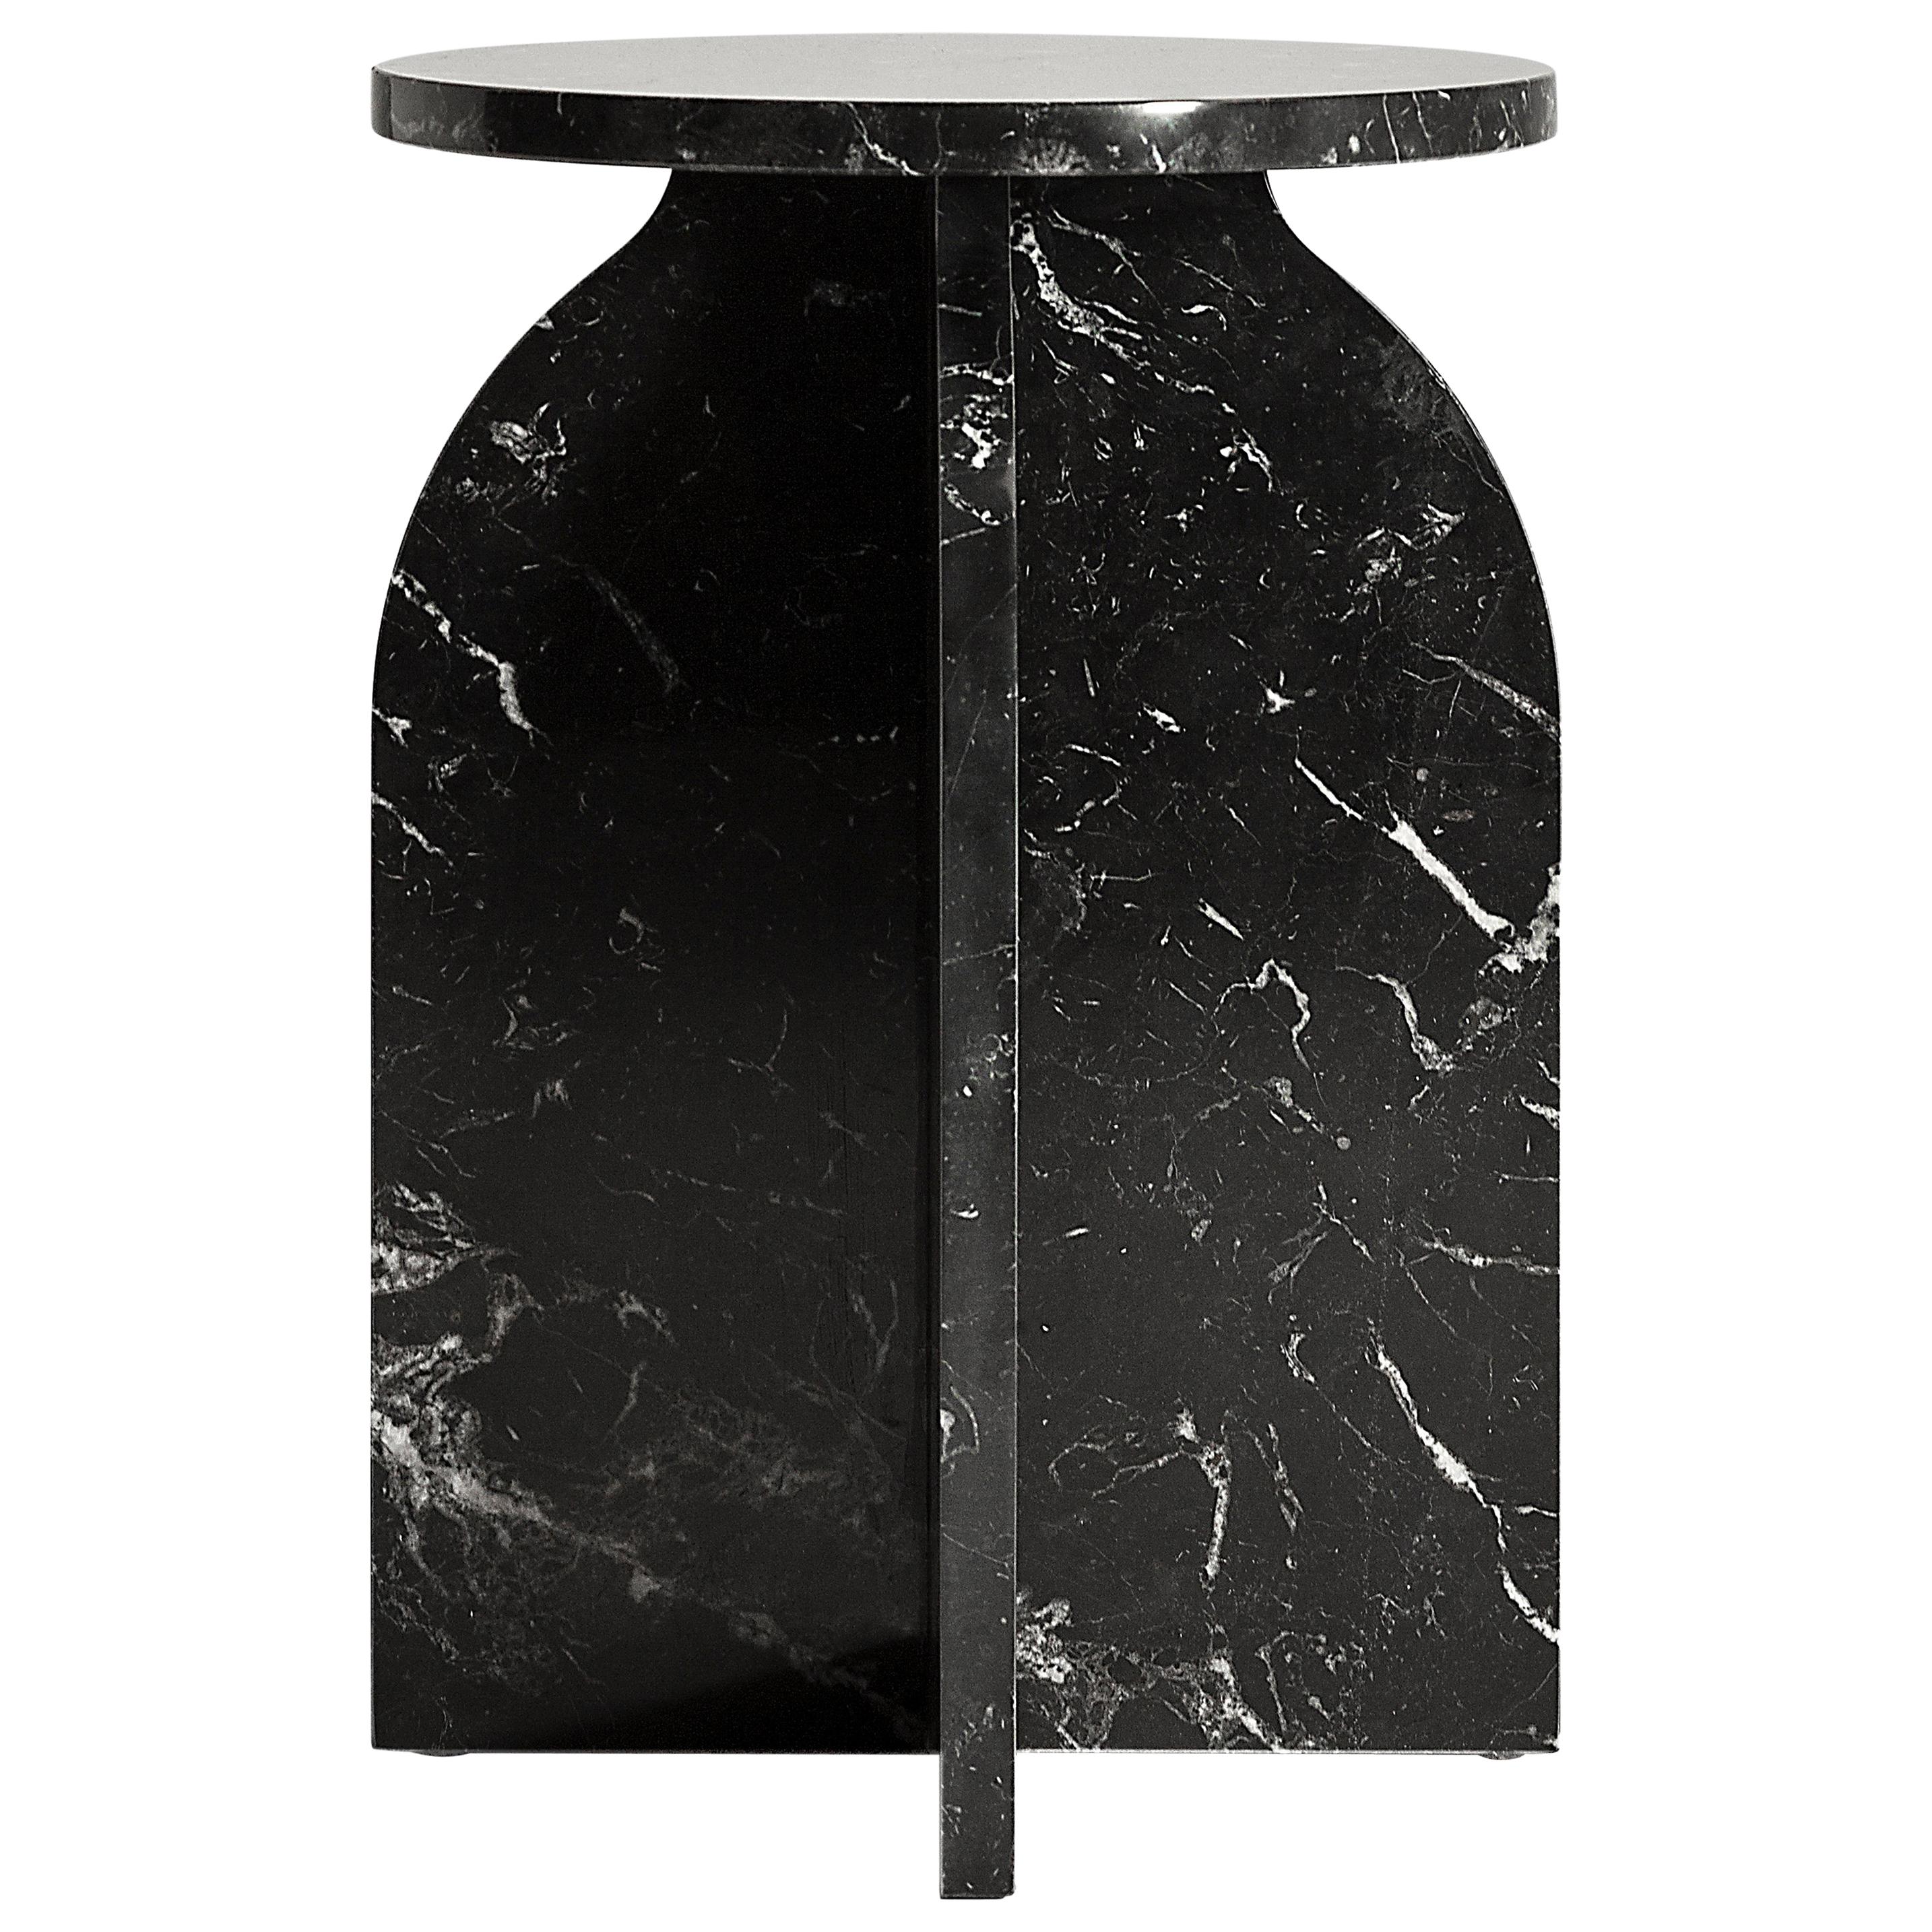 Beistelltisch aus schwarzem Marquina-Marmor von Aparentment, minimalistisch